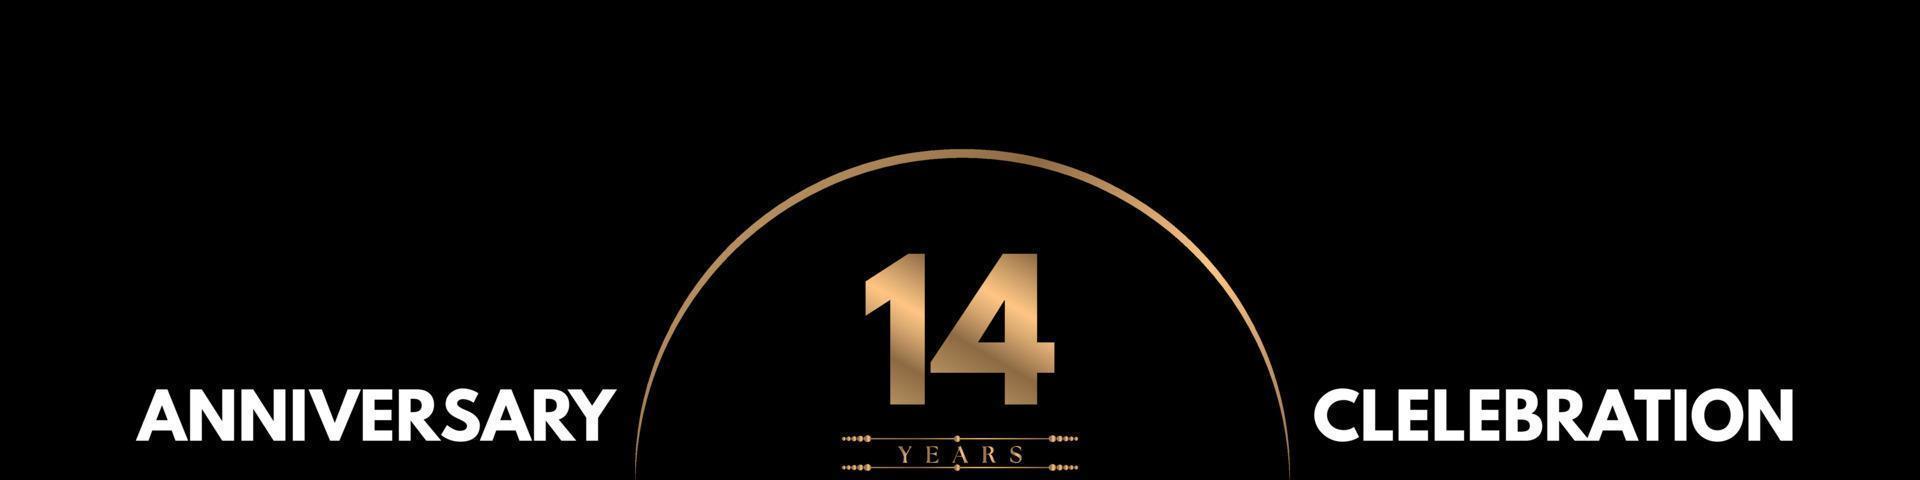 Celebración del aniversario de 14 años con un número elegante aislado en fondo negro. diseño vectorial para tarjeta de felicitación, fiesta de cumpleaños, boda, fiesta, ceremonia, tarjeta de invitación. vector